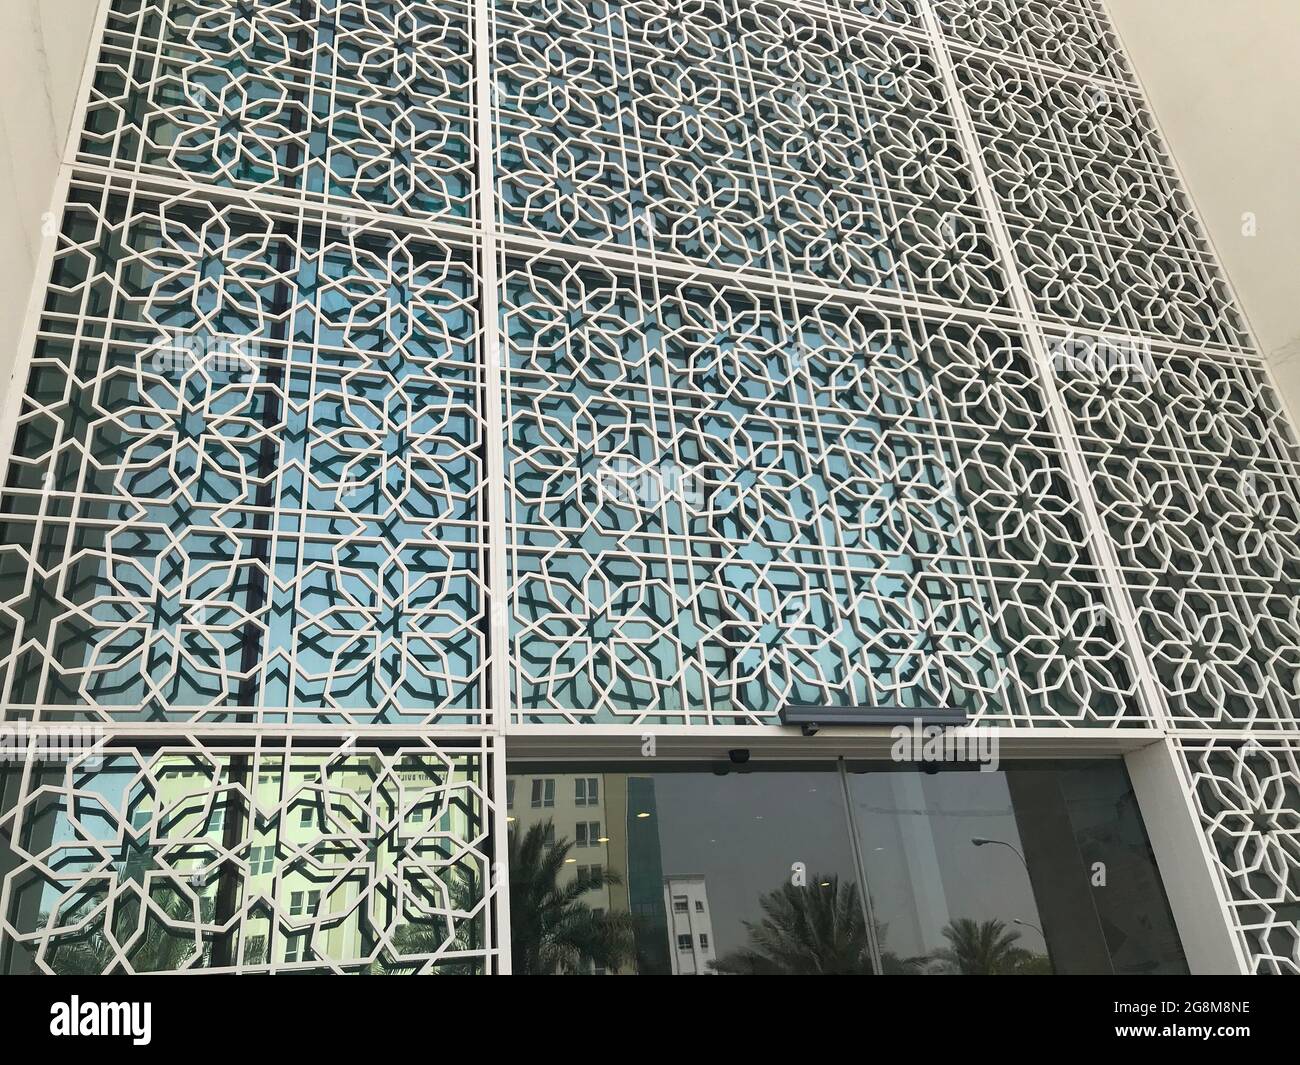 Schöne und unterschiedliche Außenwand Glasverkleidungen für die Frontansicht eines Einkaufsmall-Gebäudes und die Paneele sind durch Aluminiumrahmen unterteilt Stockfoto